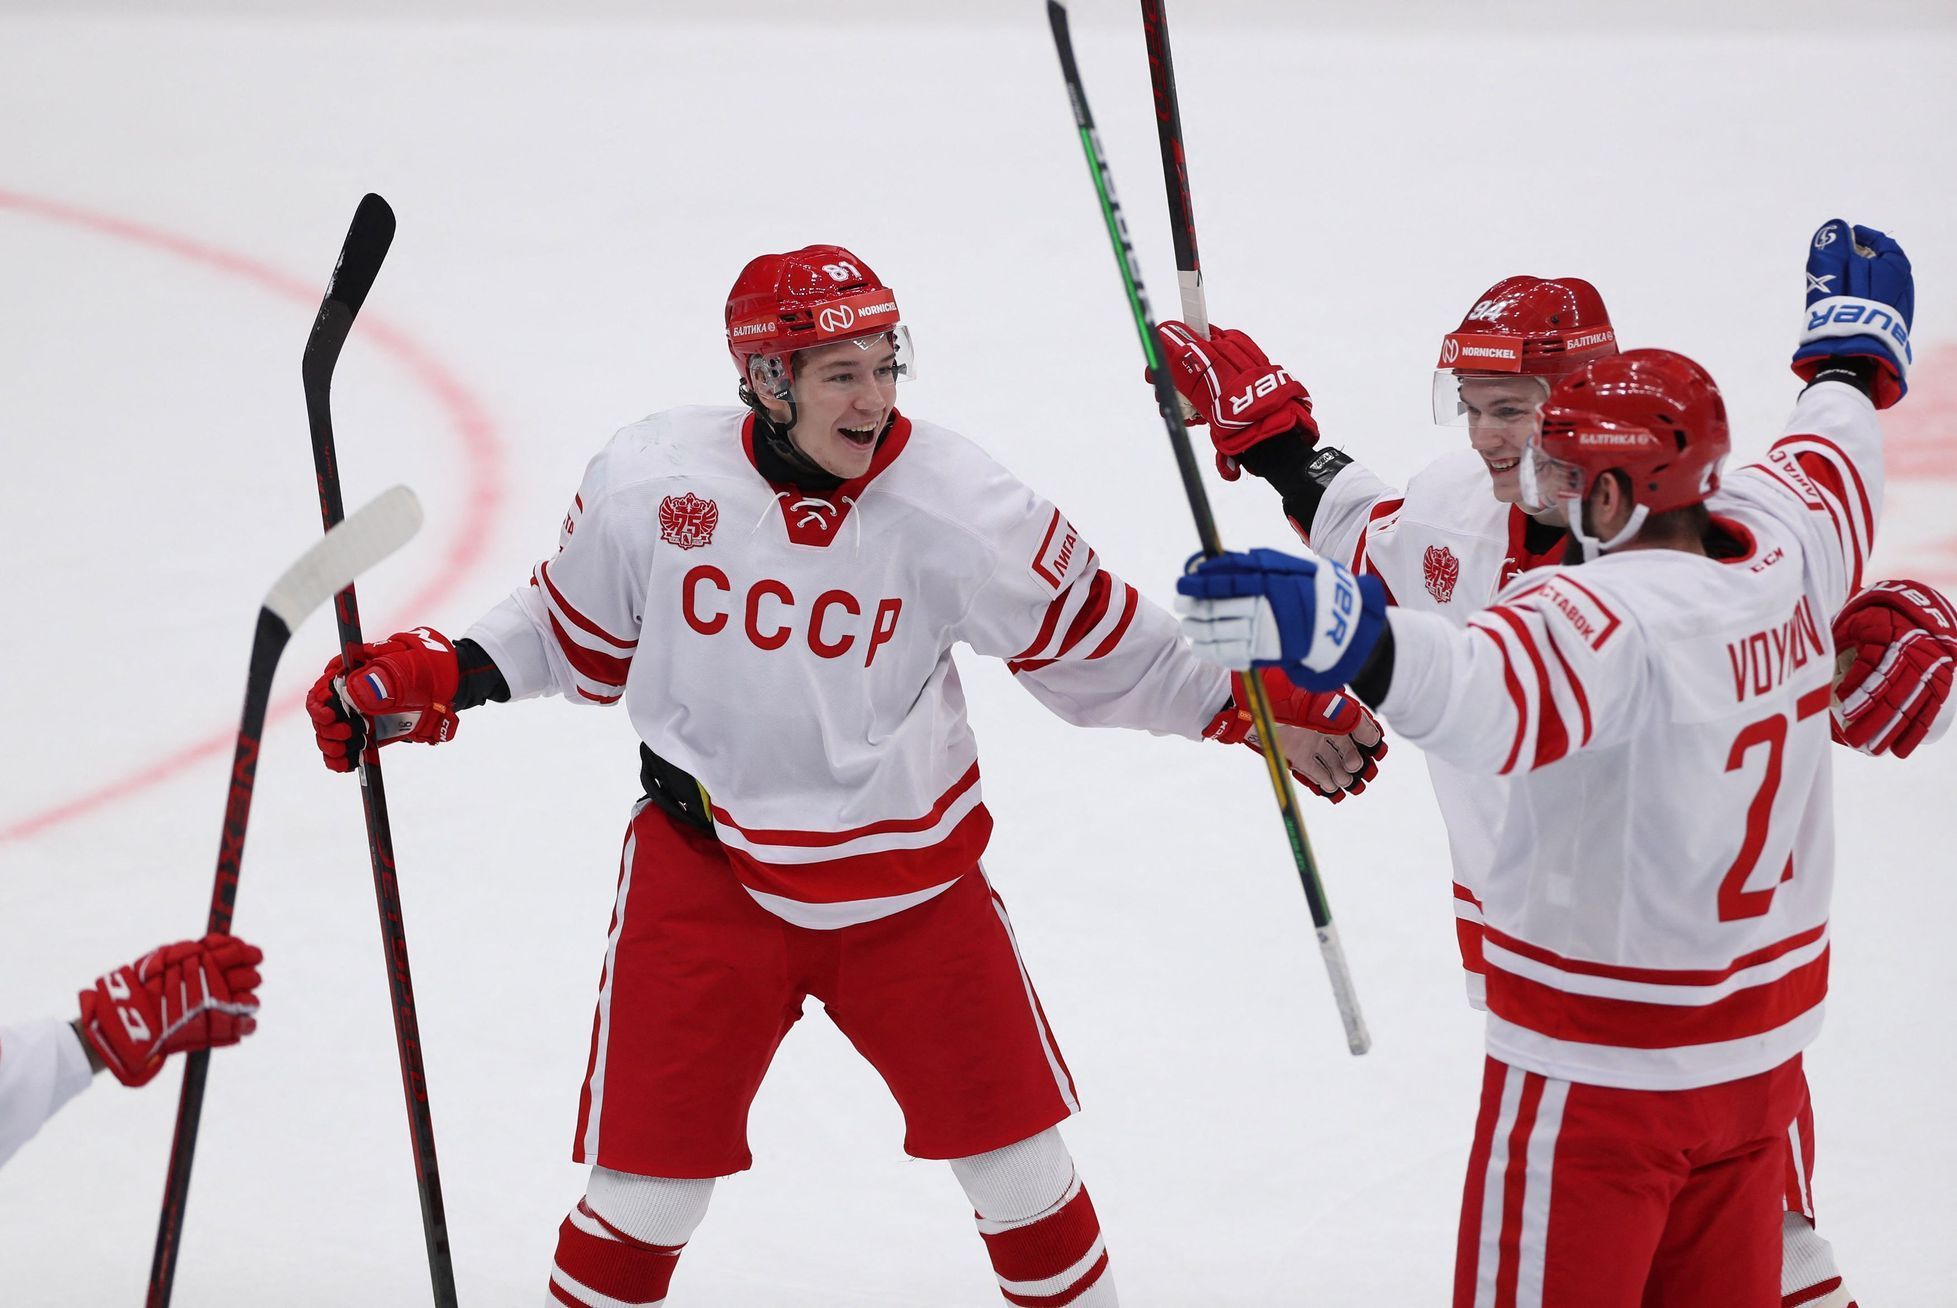 Radost ruských hokejistů v retro dresech SSSR na Channel One Cupu 2021